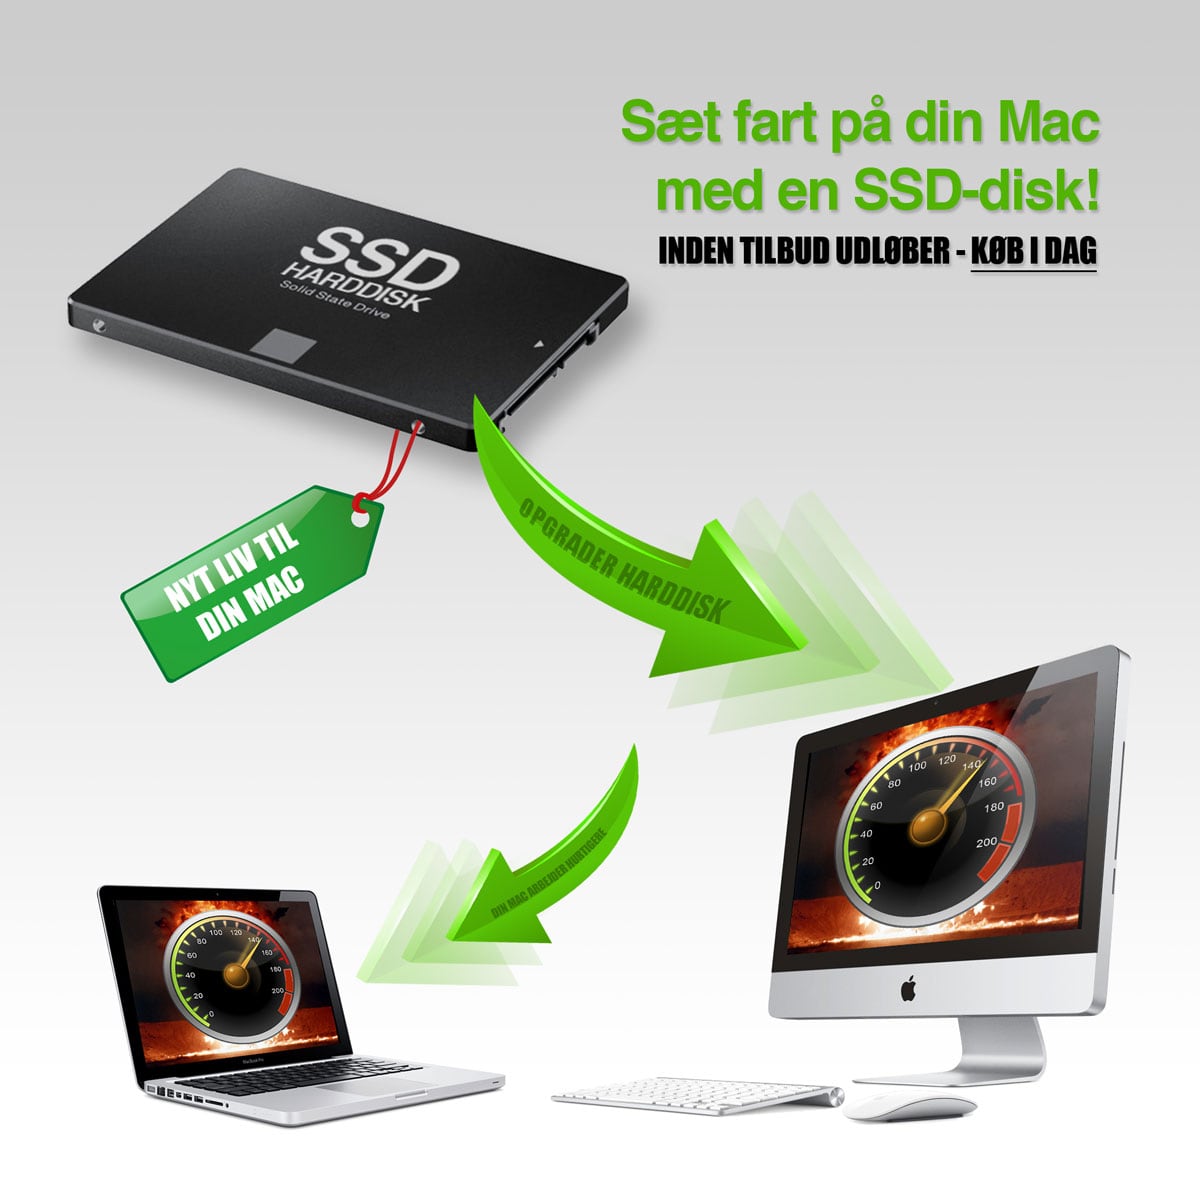 SSD opgrader din gamle macbook pro hvis den er for langsom - gør den hurtig